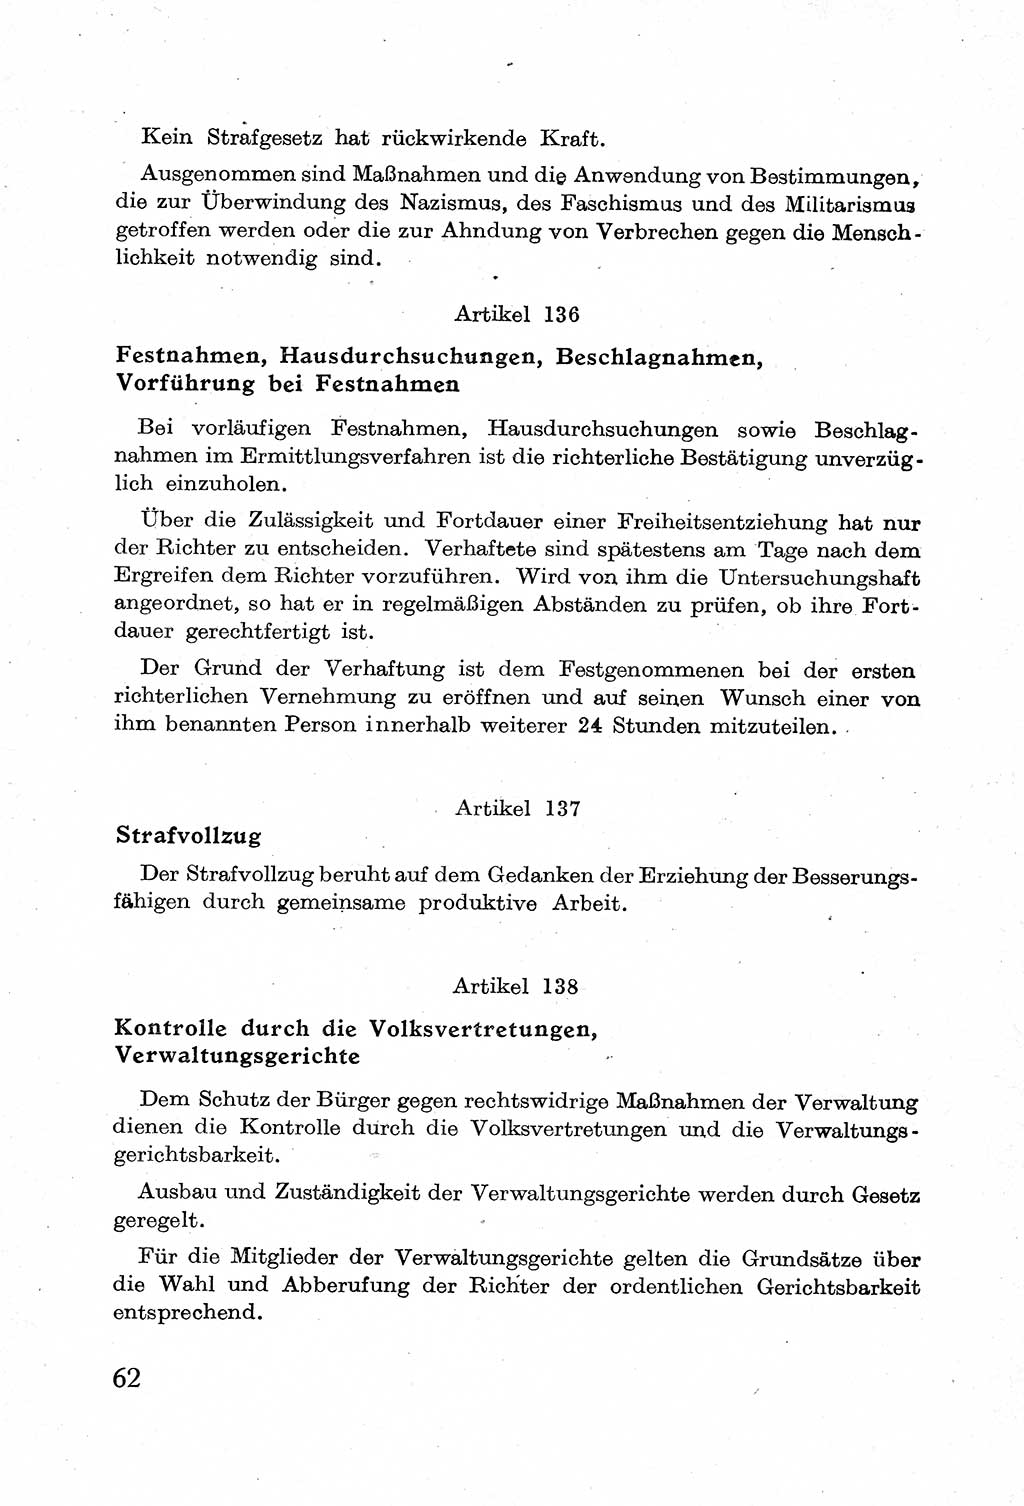 Verfassung der Deutschen Demokratischen Republik (DDR) mit einer Einleitung von Karl Steinhoff 1949, Seite 62 (Verf. DDR Einl. K. S. 1949, S. 62)